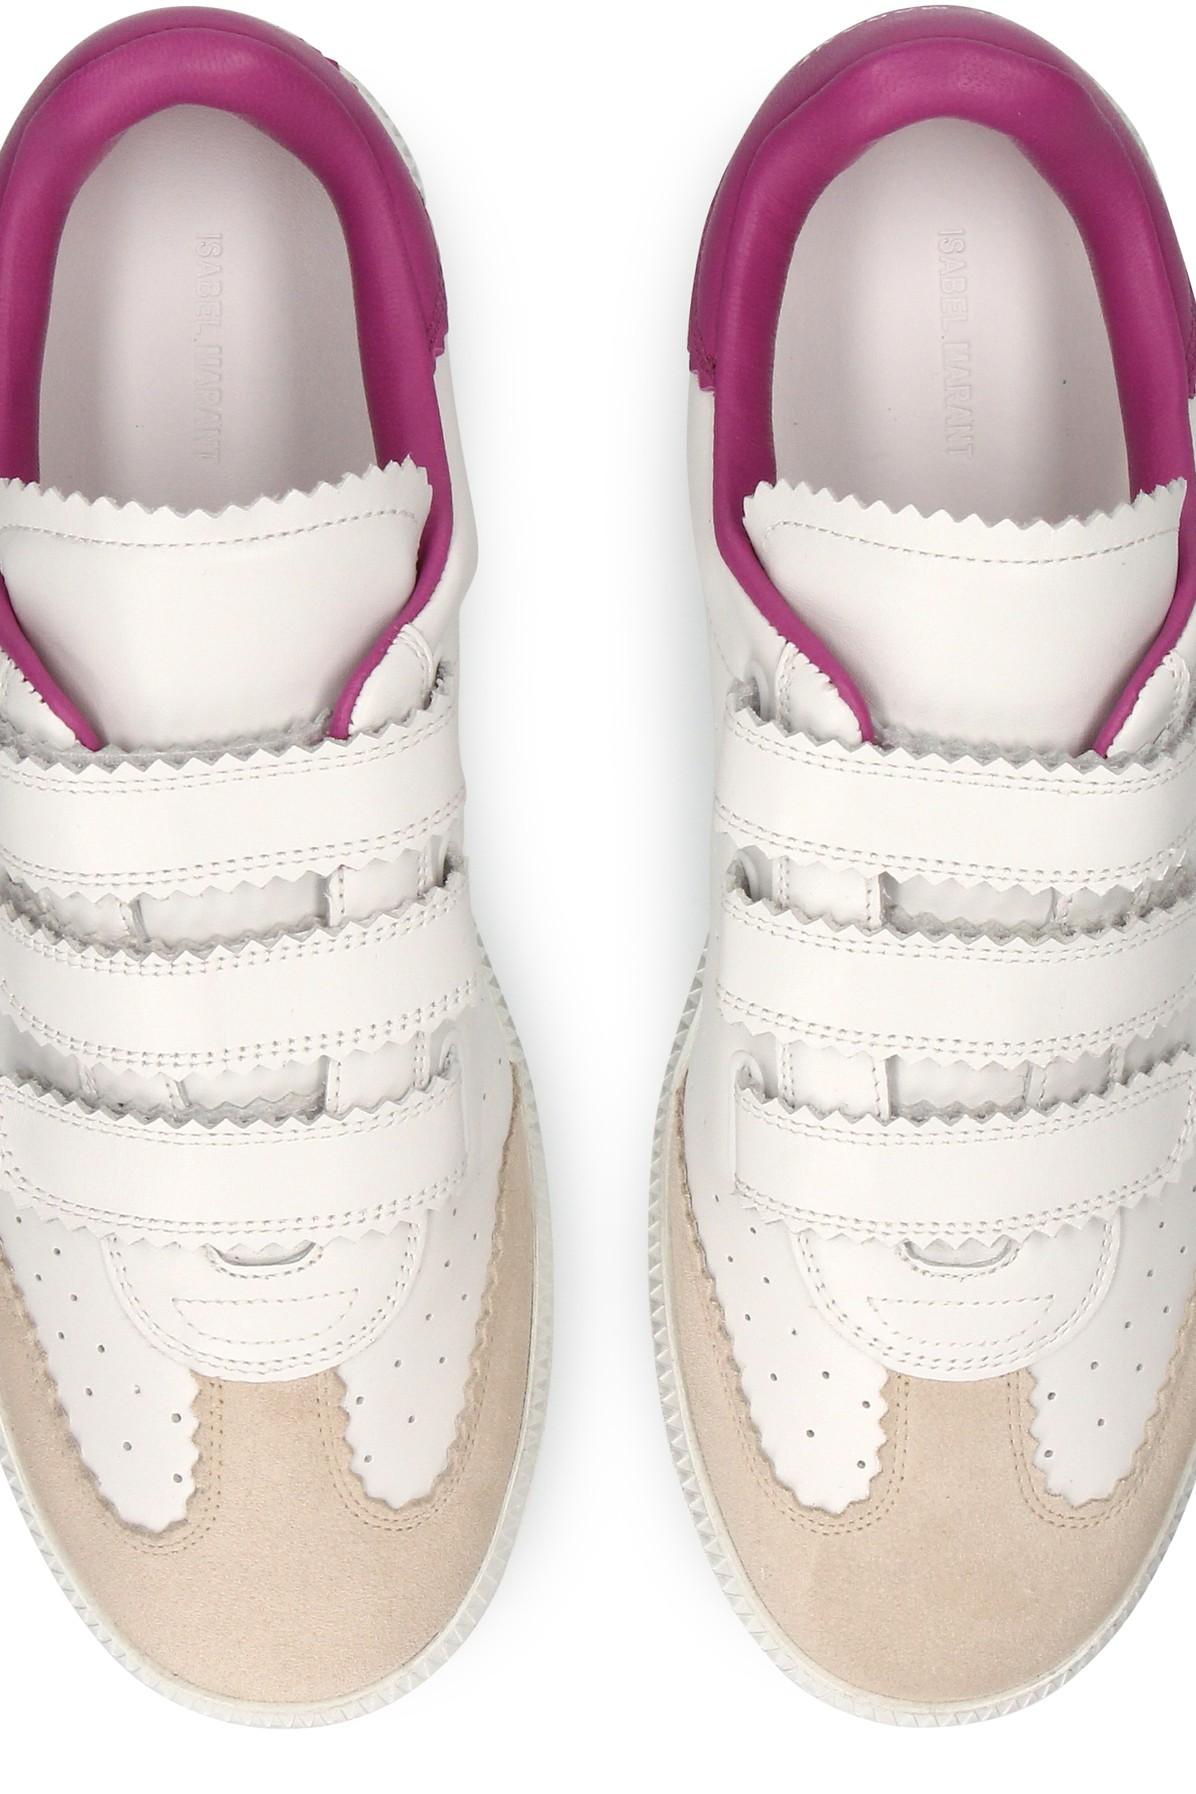 Marant Beth Sneakers in Pink |